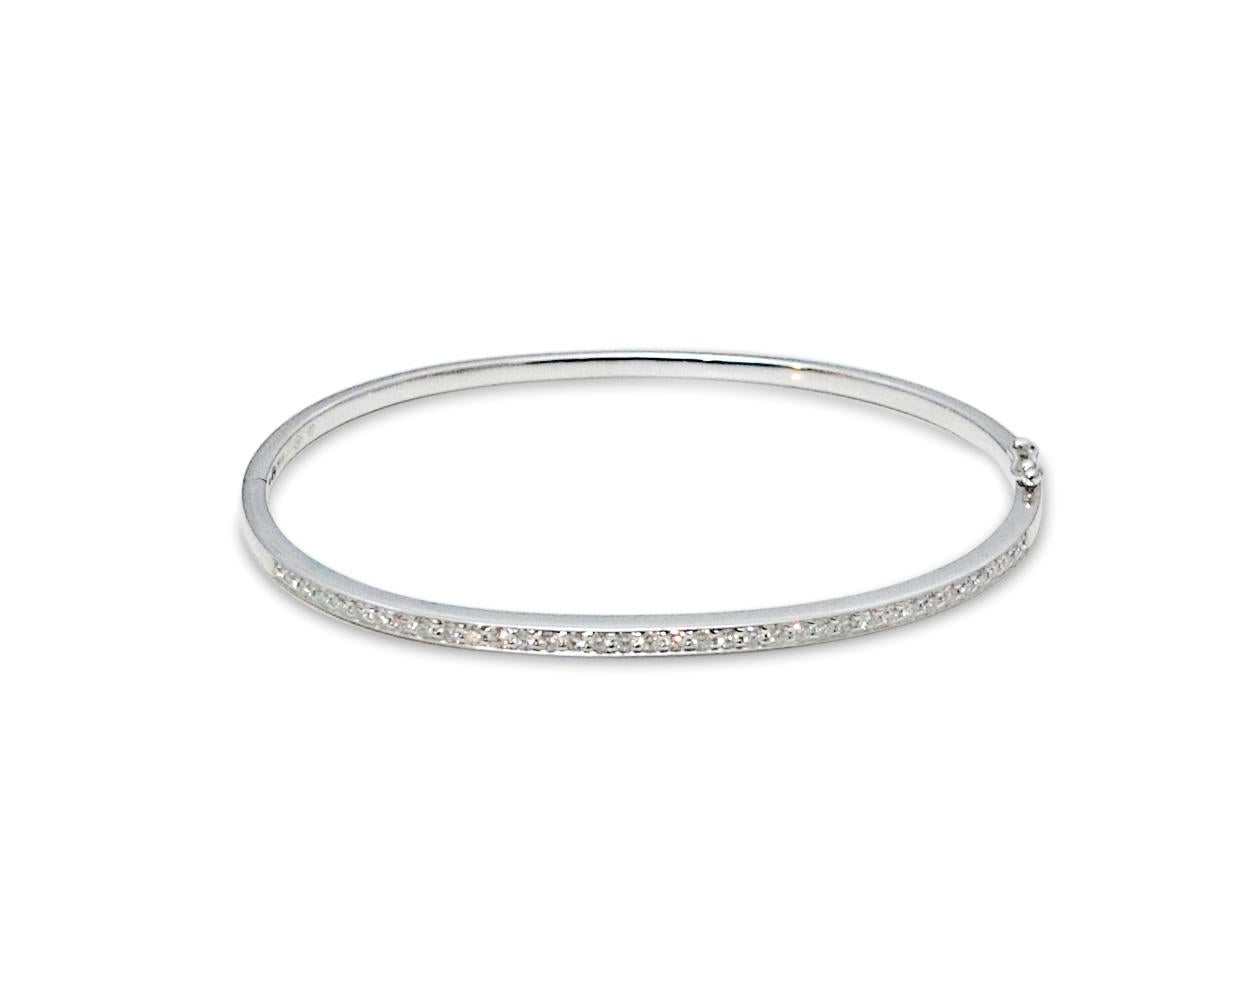 Magnifique bracelet-bracelet en or blanc 750 / 1000eme, 36 diamants demi-pavés, 18 carats.

Poids des diamants : 0,53 carats

Largeur du bracelet : 19cm

Fermoir sécurisé à double clic avec valve de sécurité.